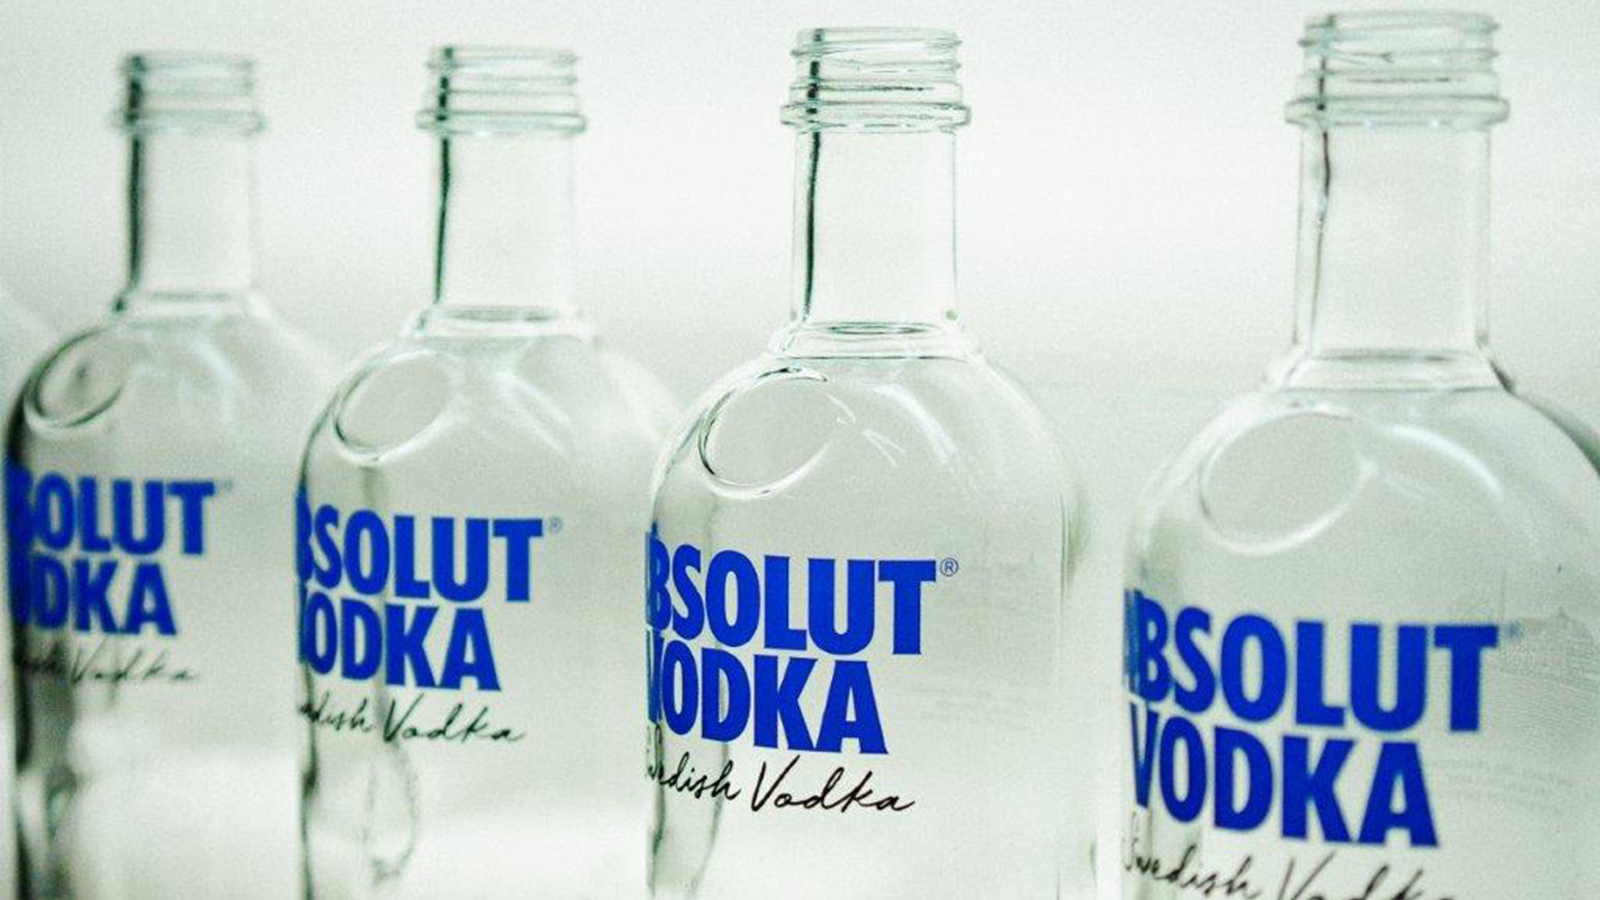 Sacmi FlexiOpera for The Absolut Vodka